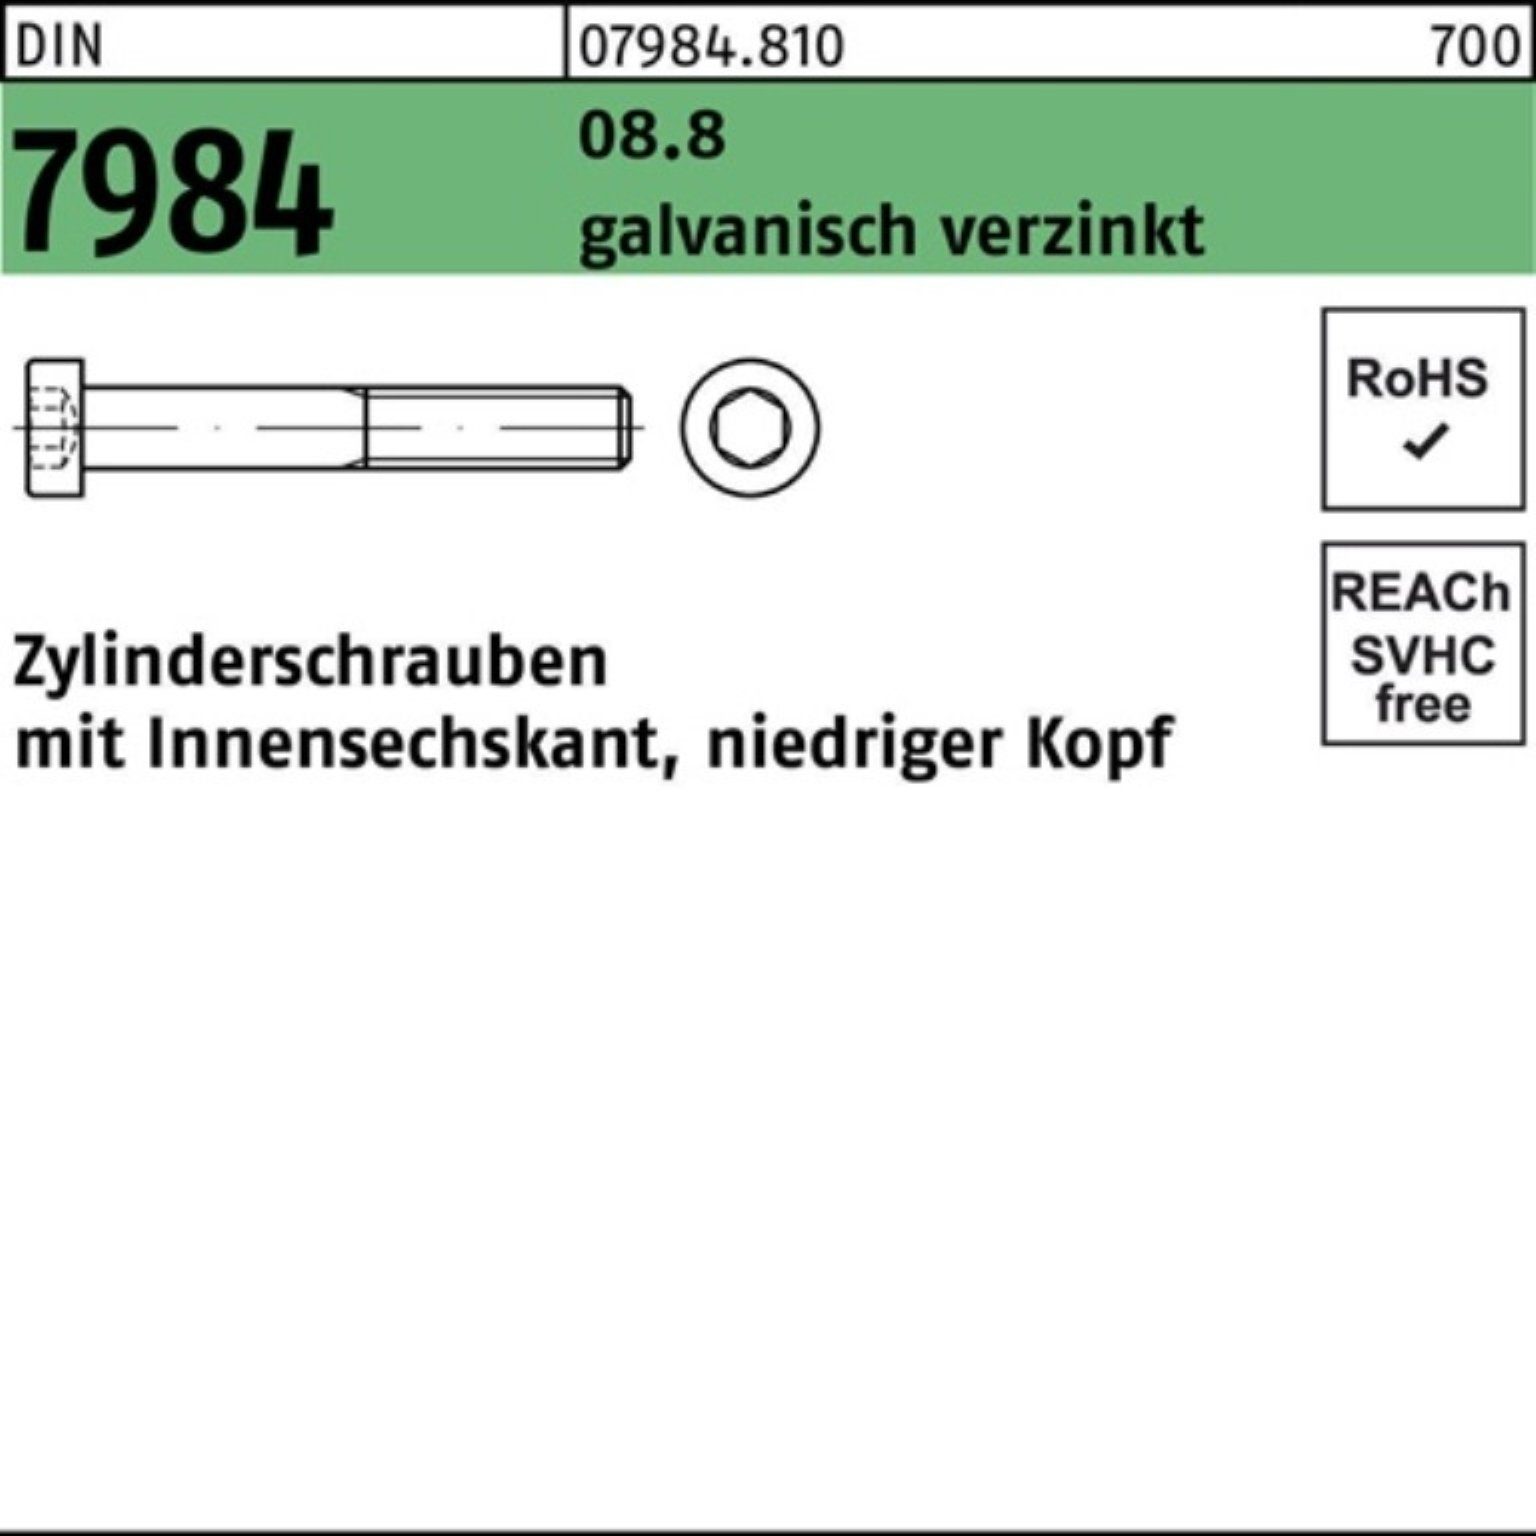 Pack 7984 Zylinderschraube Zylinderschraube galv.verz. Innen-6kt Reyher M10x90 8.8 100er 1 DIN